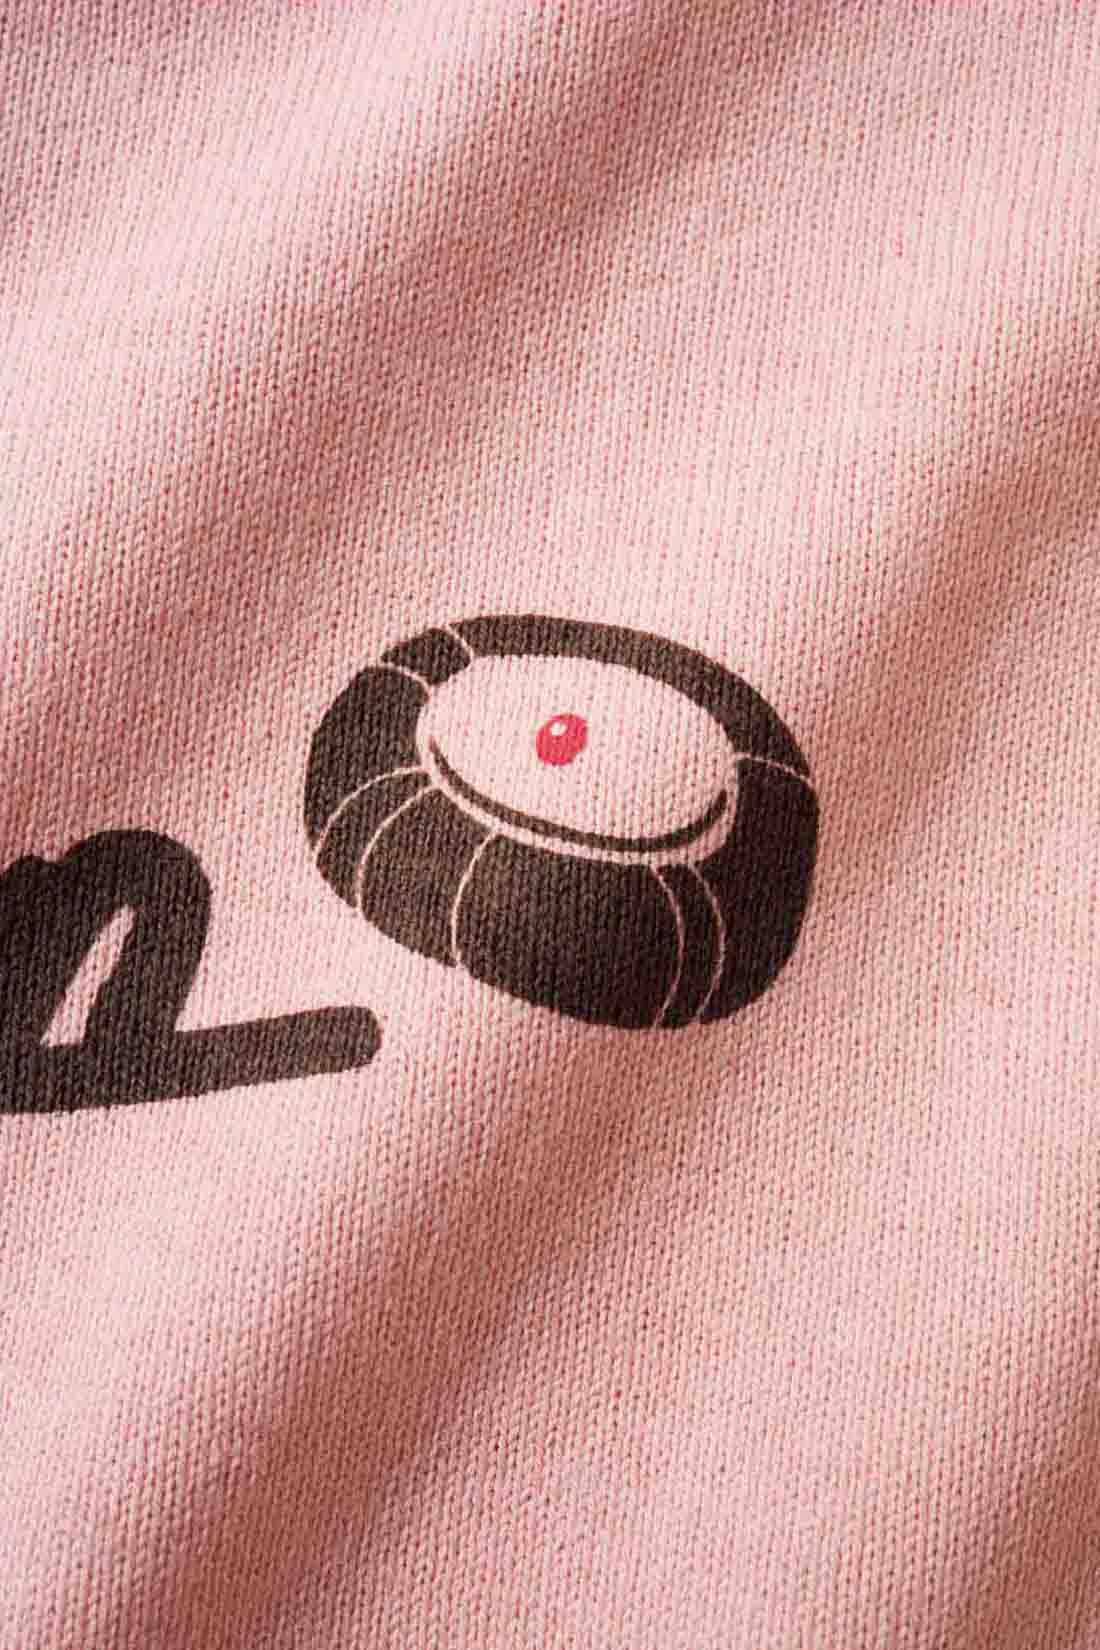 Live in  comfort|Live love cottonプロジェクト リブ イン コンフォート神戸のベーカリーハラダのパンさんとつくったオーガニックコットンのレトロかわいいTシャツ〈ジェイブルー〉|バックプリントには定番商品 「シャーベットクリーム」 のイラストも。